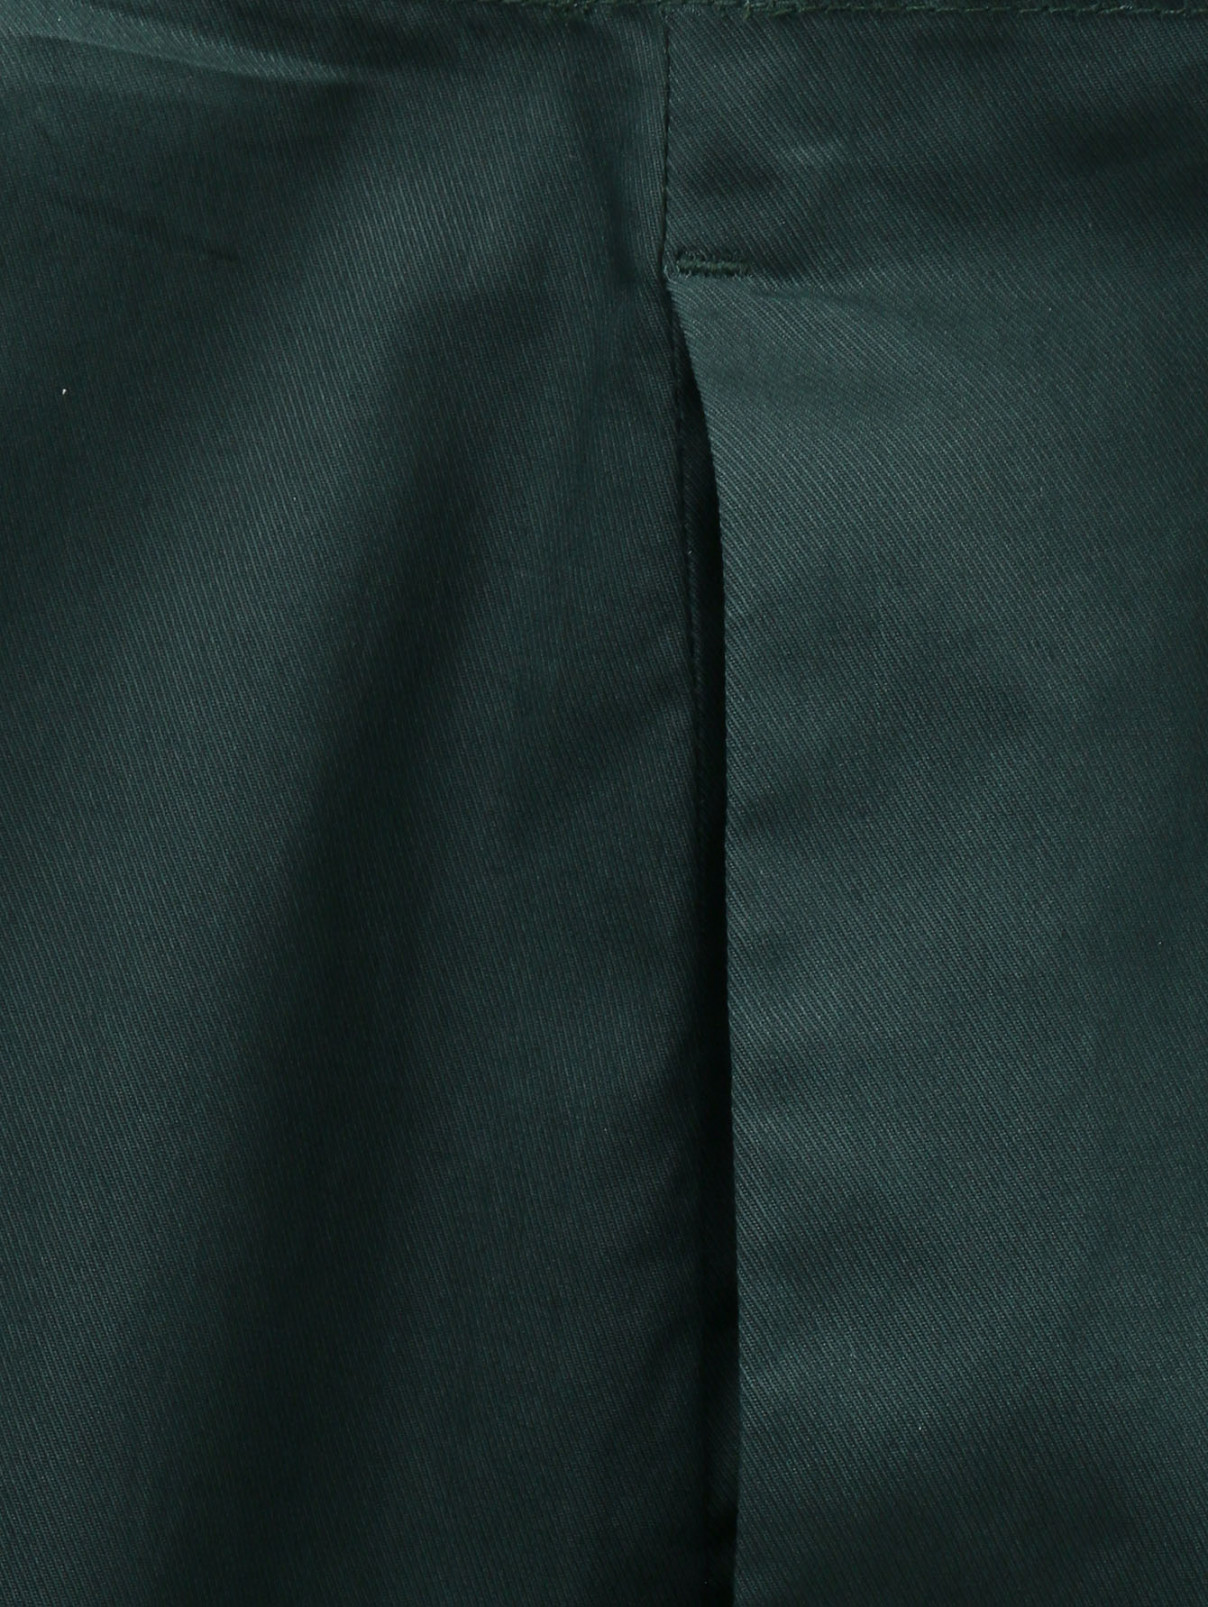 Юбка-шорты из хлопка с запахом Jil Sander  –  Модель Общий вид  – Цвет:  Зеленый